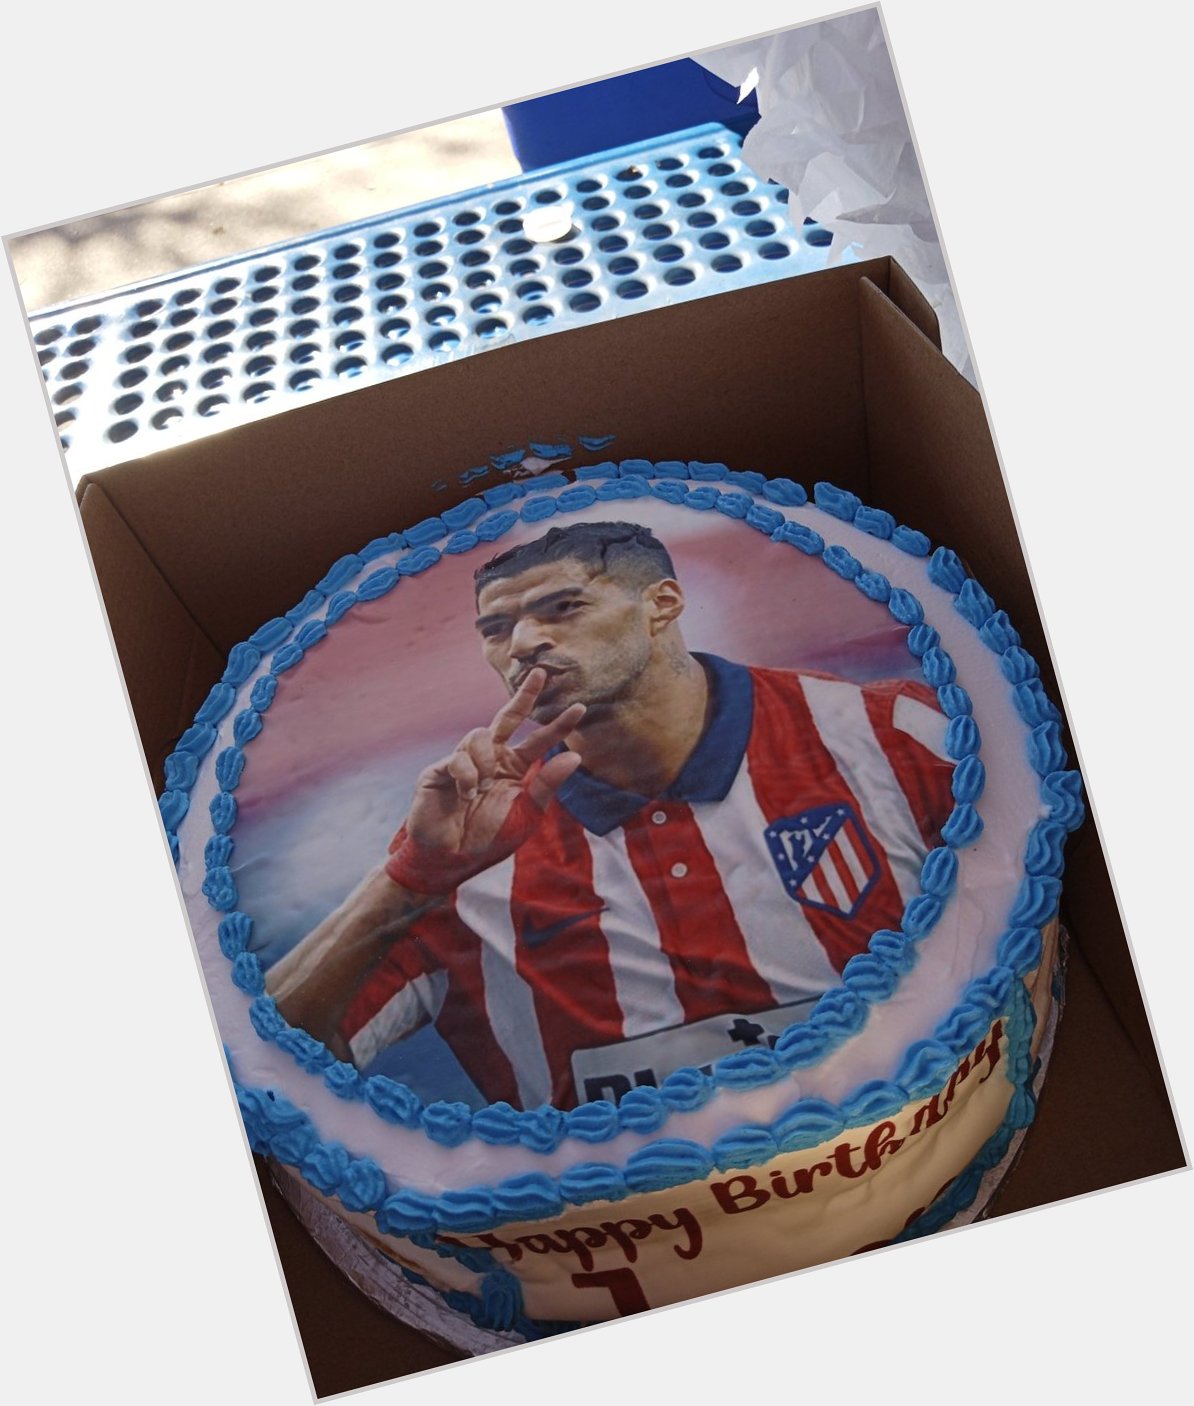 It\s Luis Suarez    Happy birthday to me  